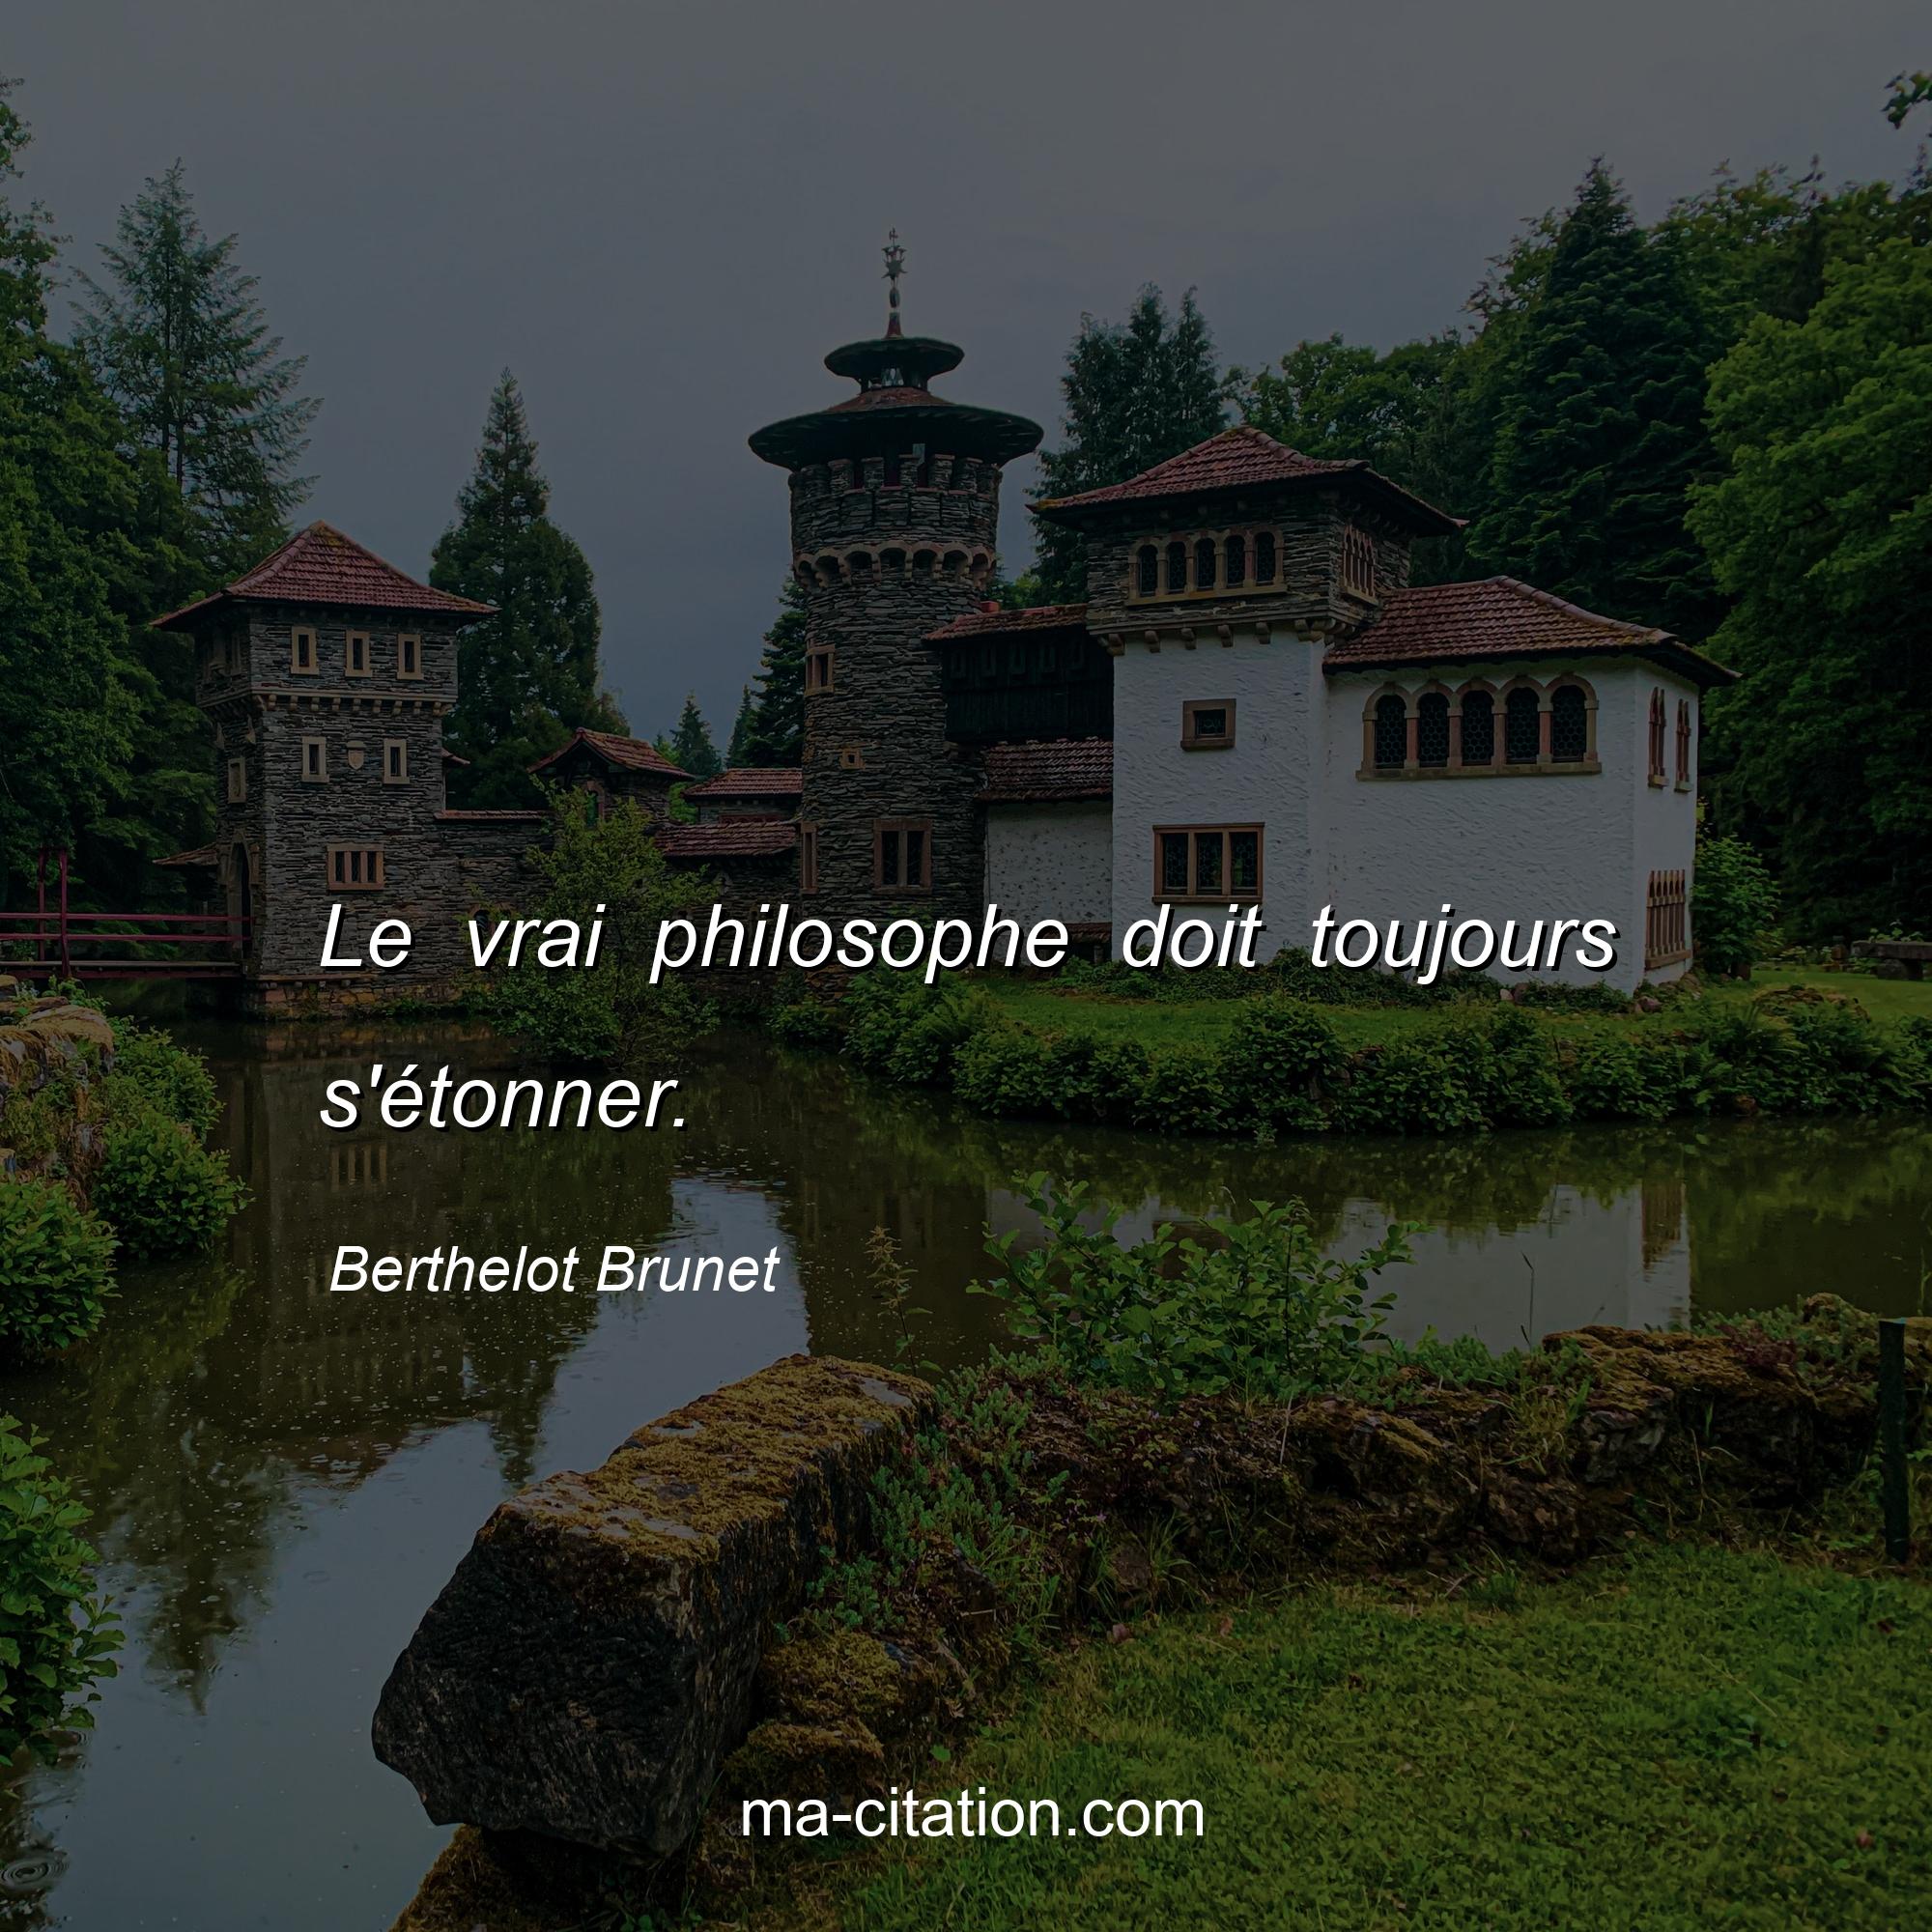 Berthelot Brunet : Le vrai philosophe doit toujours s'étonner.